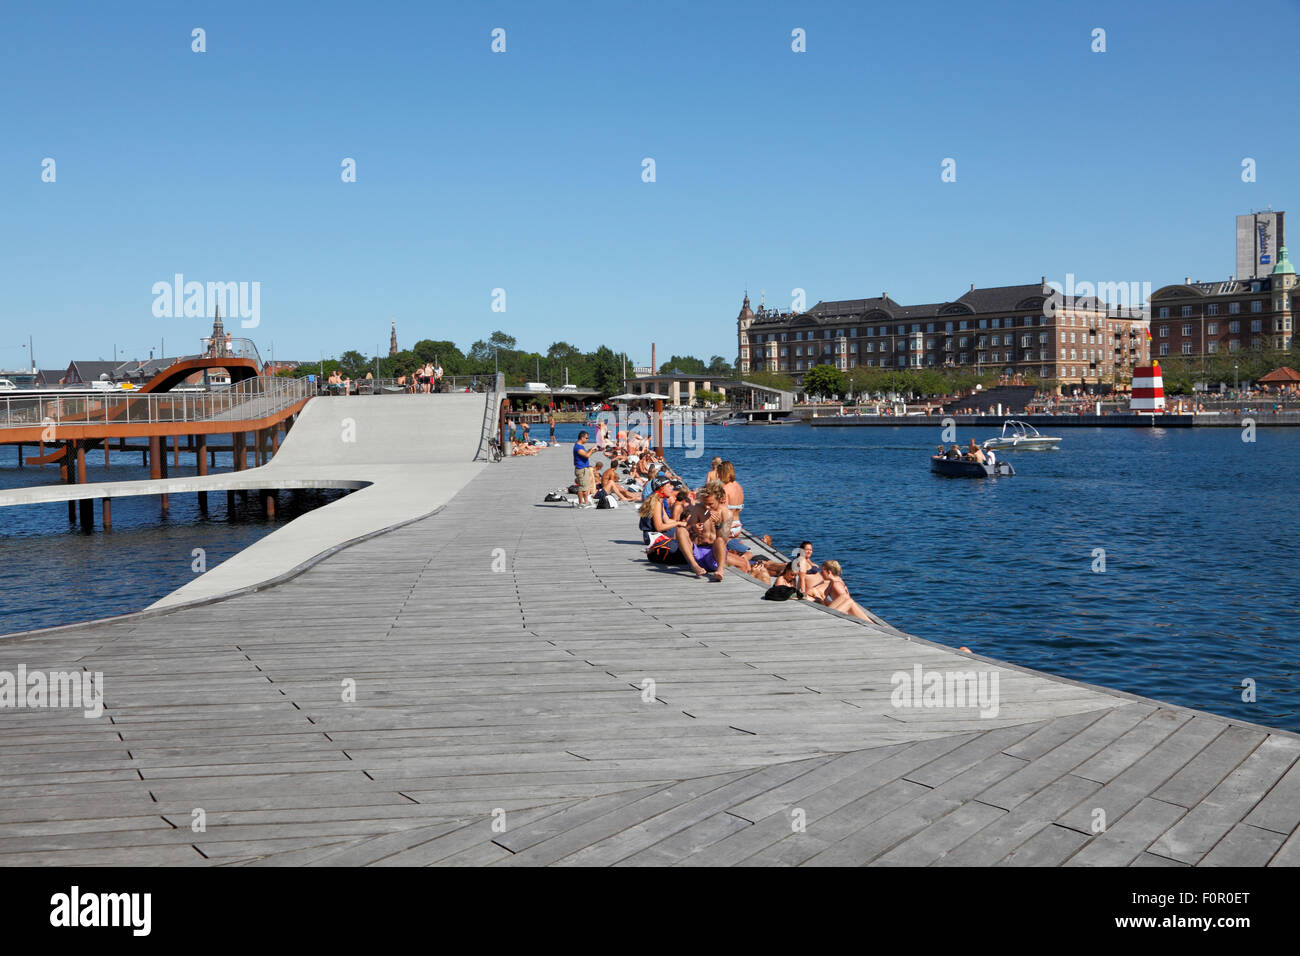 Kalvebod Wellen am Kalvebod Brygge in Kopenhagen. Islands Brygge Harbour Bath auf der rechten Seite am gegenüberliegenden Hafenkanal. Öffentlicher Stadtstrand. Stockfoto